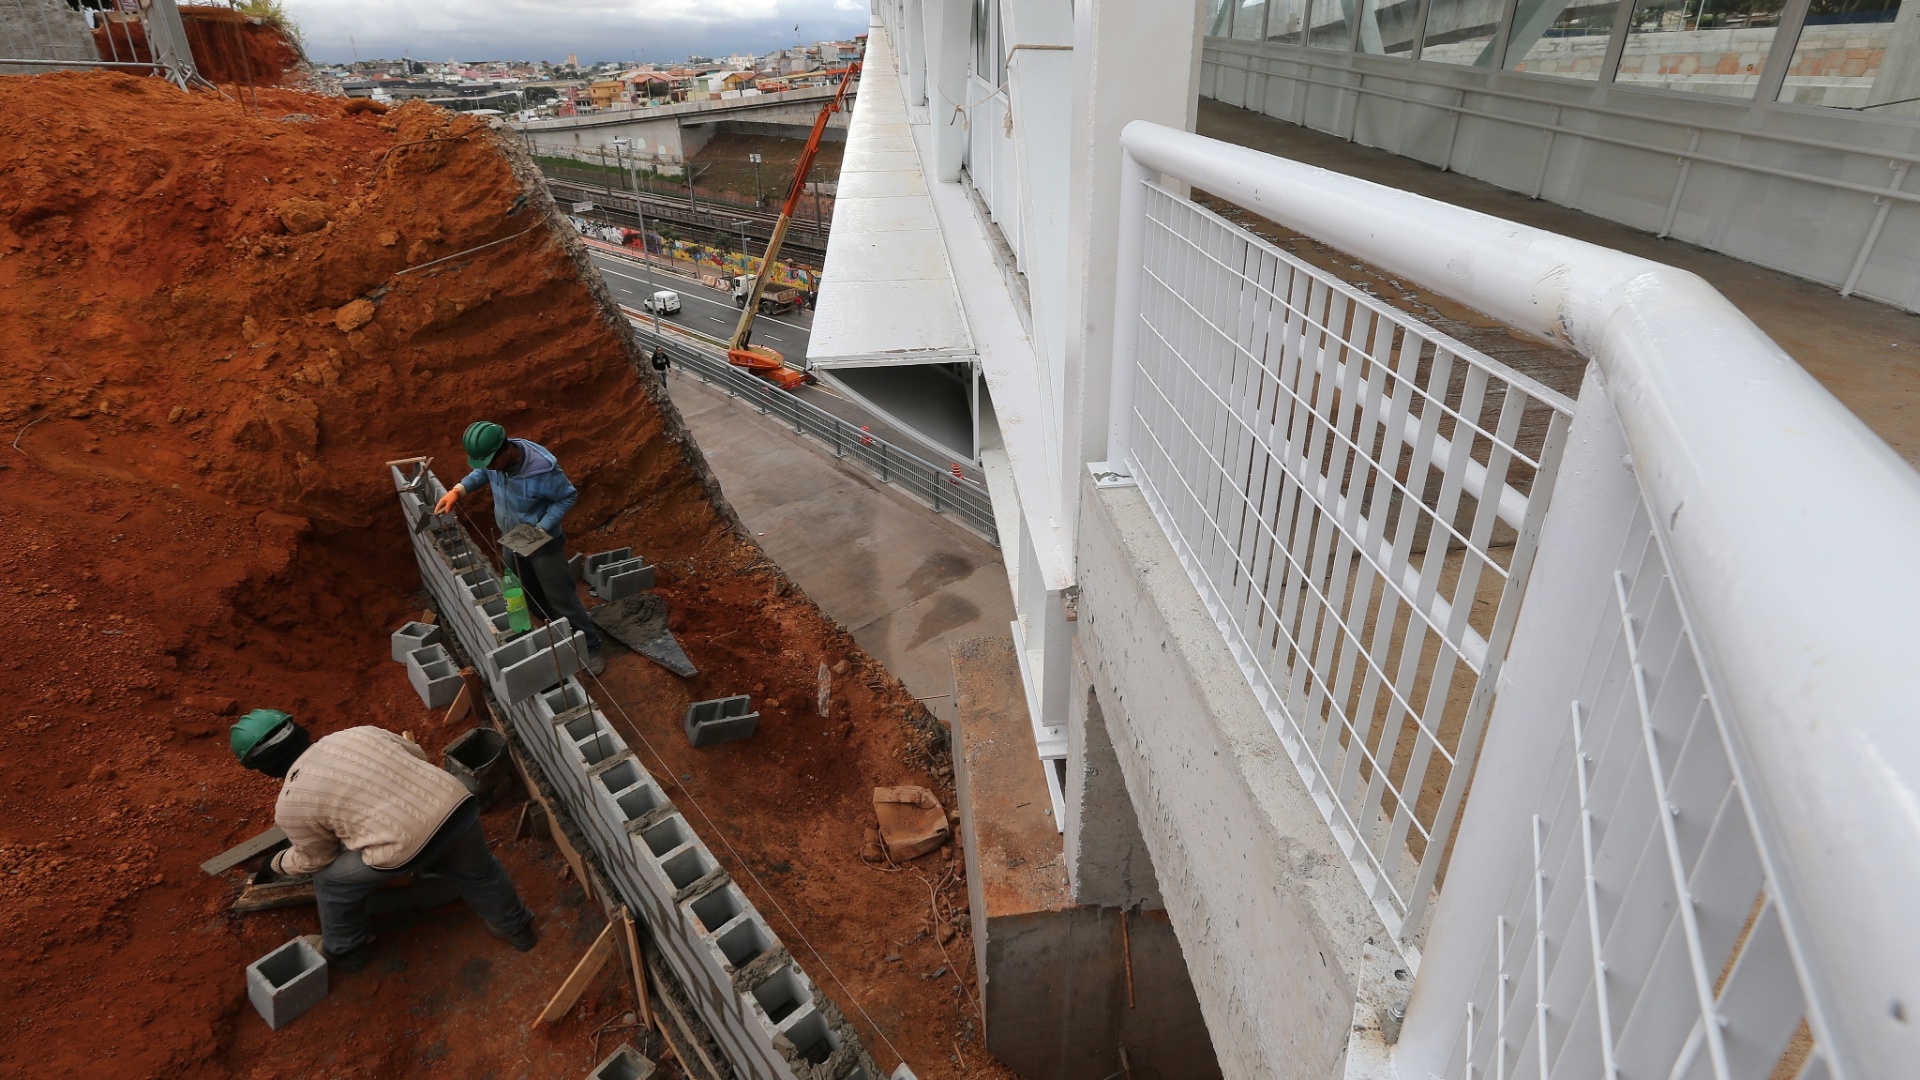 Operários ainda trabalham em obras no entorno do Itaquerão